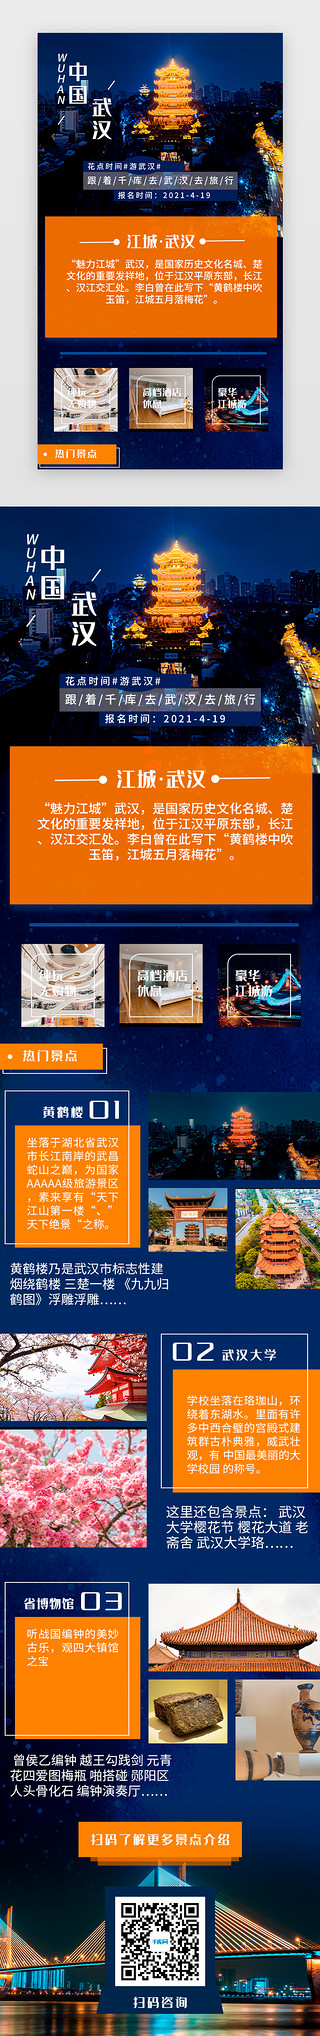 武汉旅游手机h5写实蓝色风景